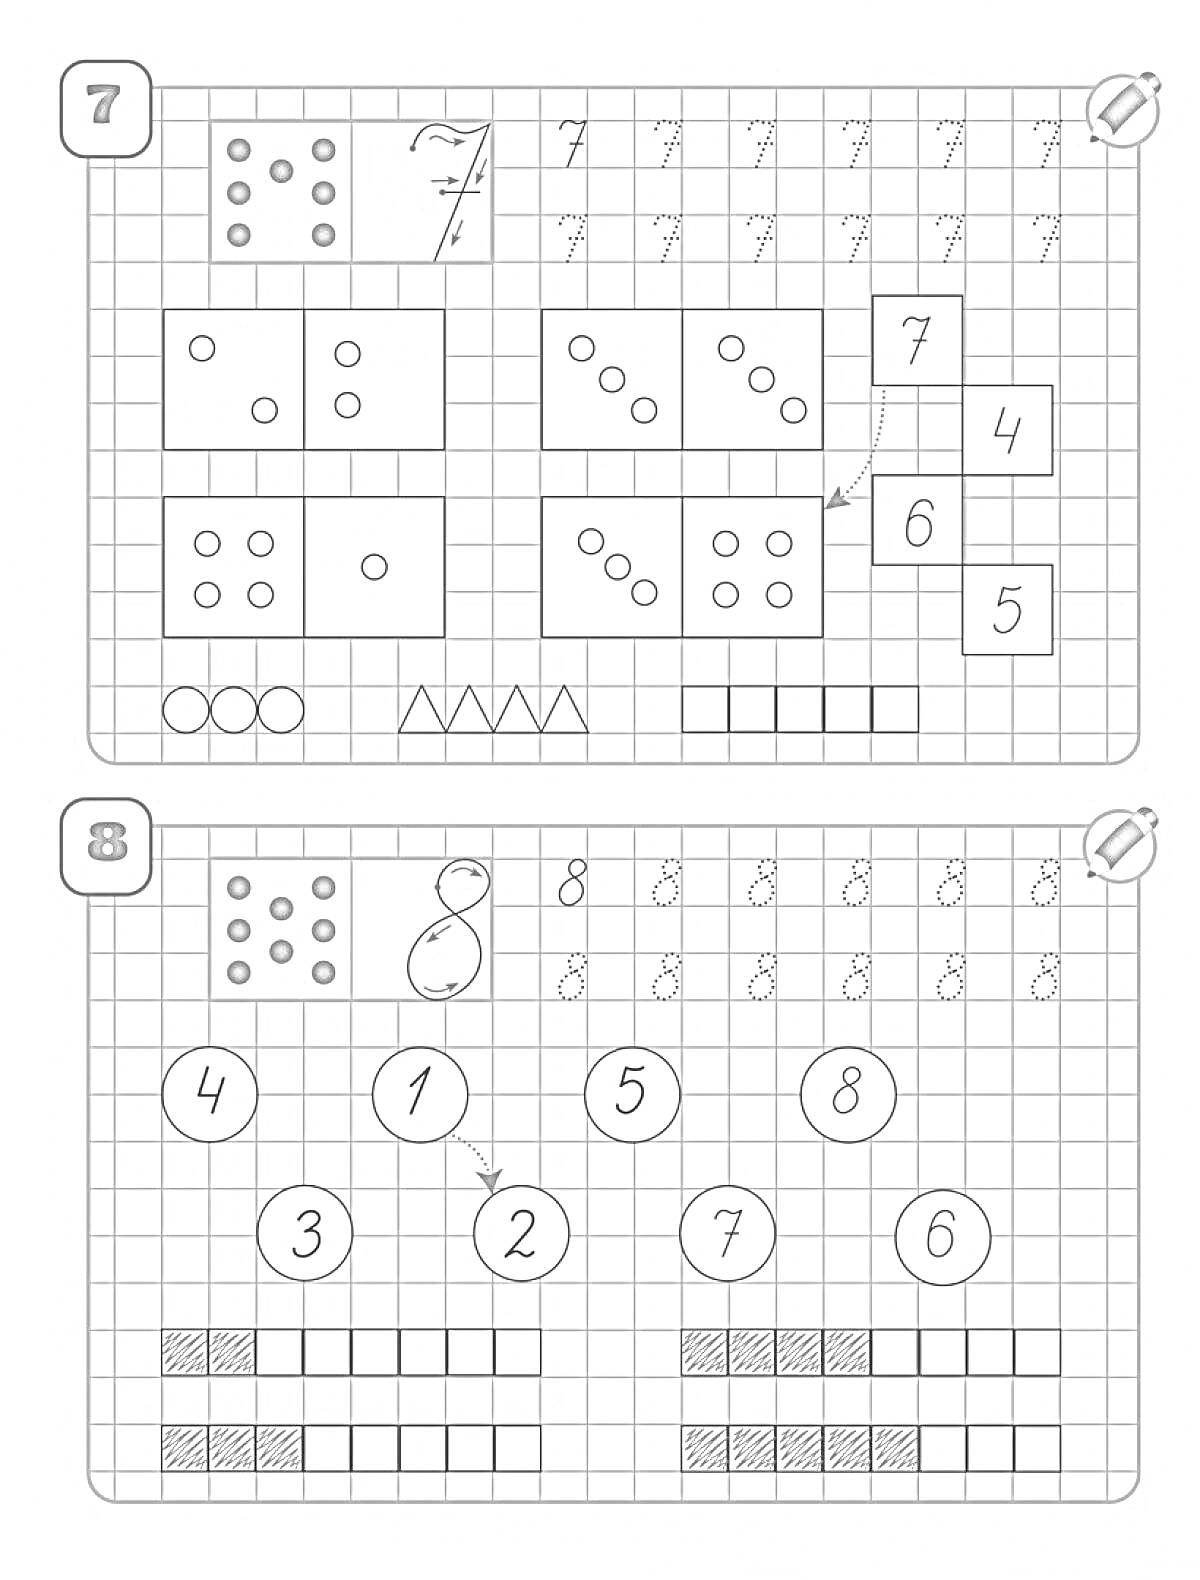 Прописи с числами и элементами счетных палочек, треугольников, цифр и кружков